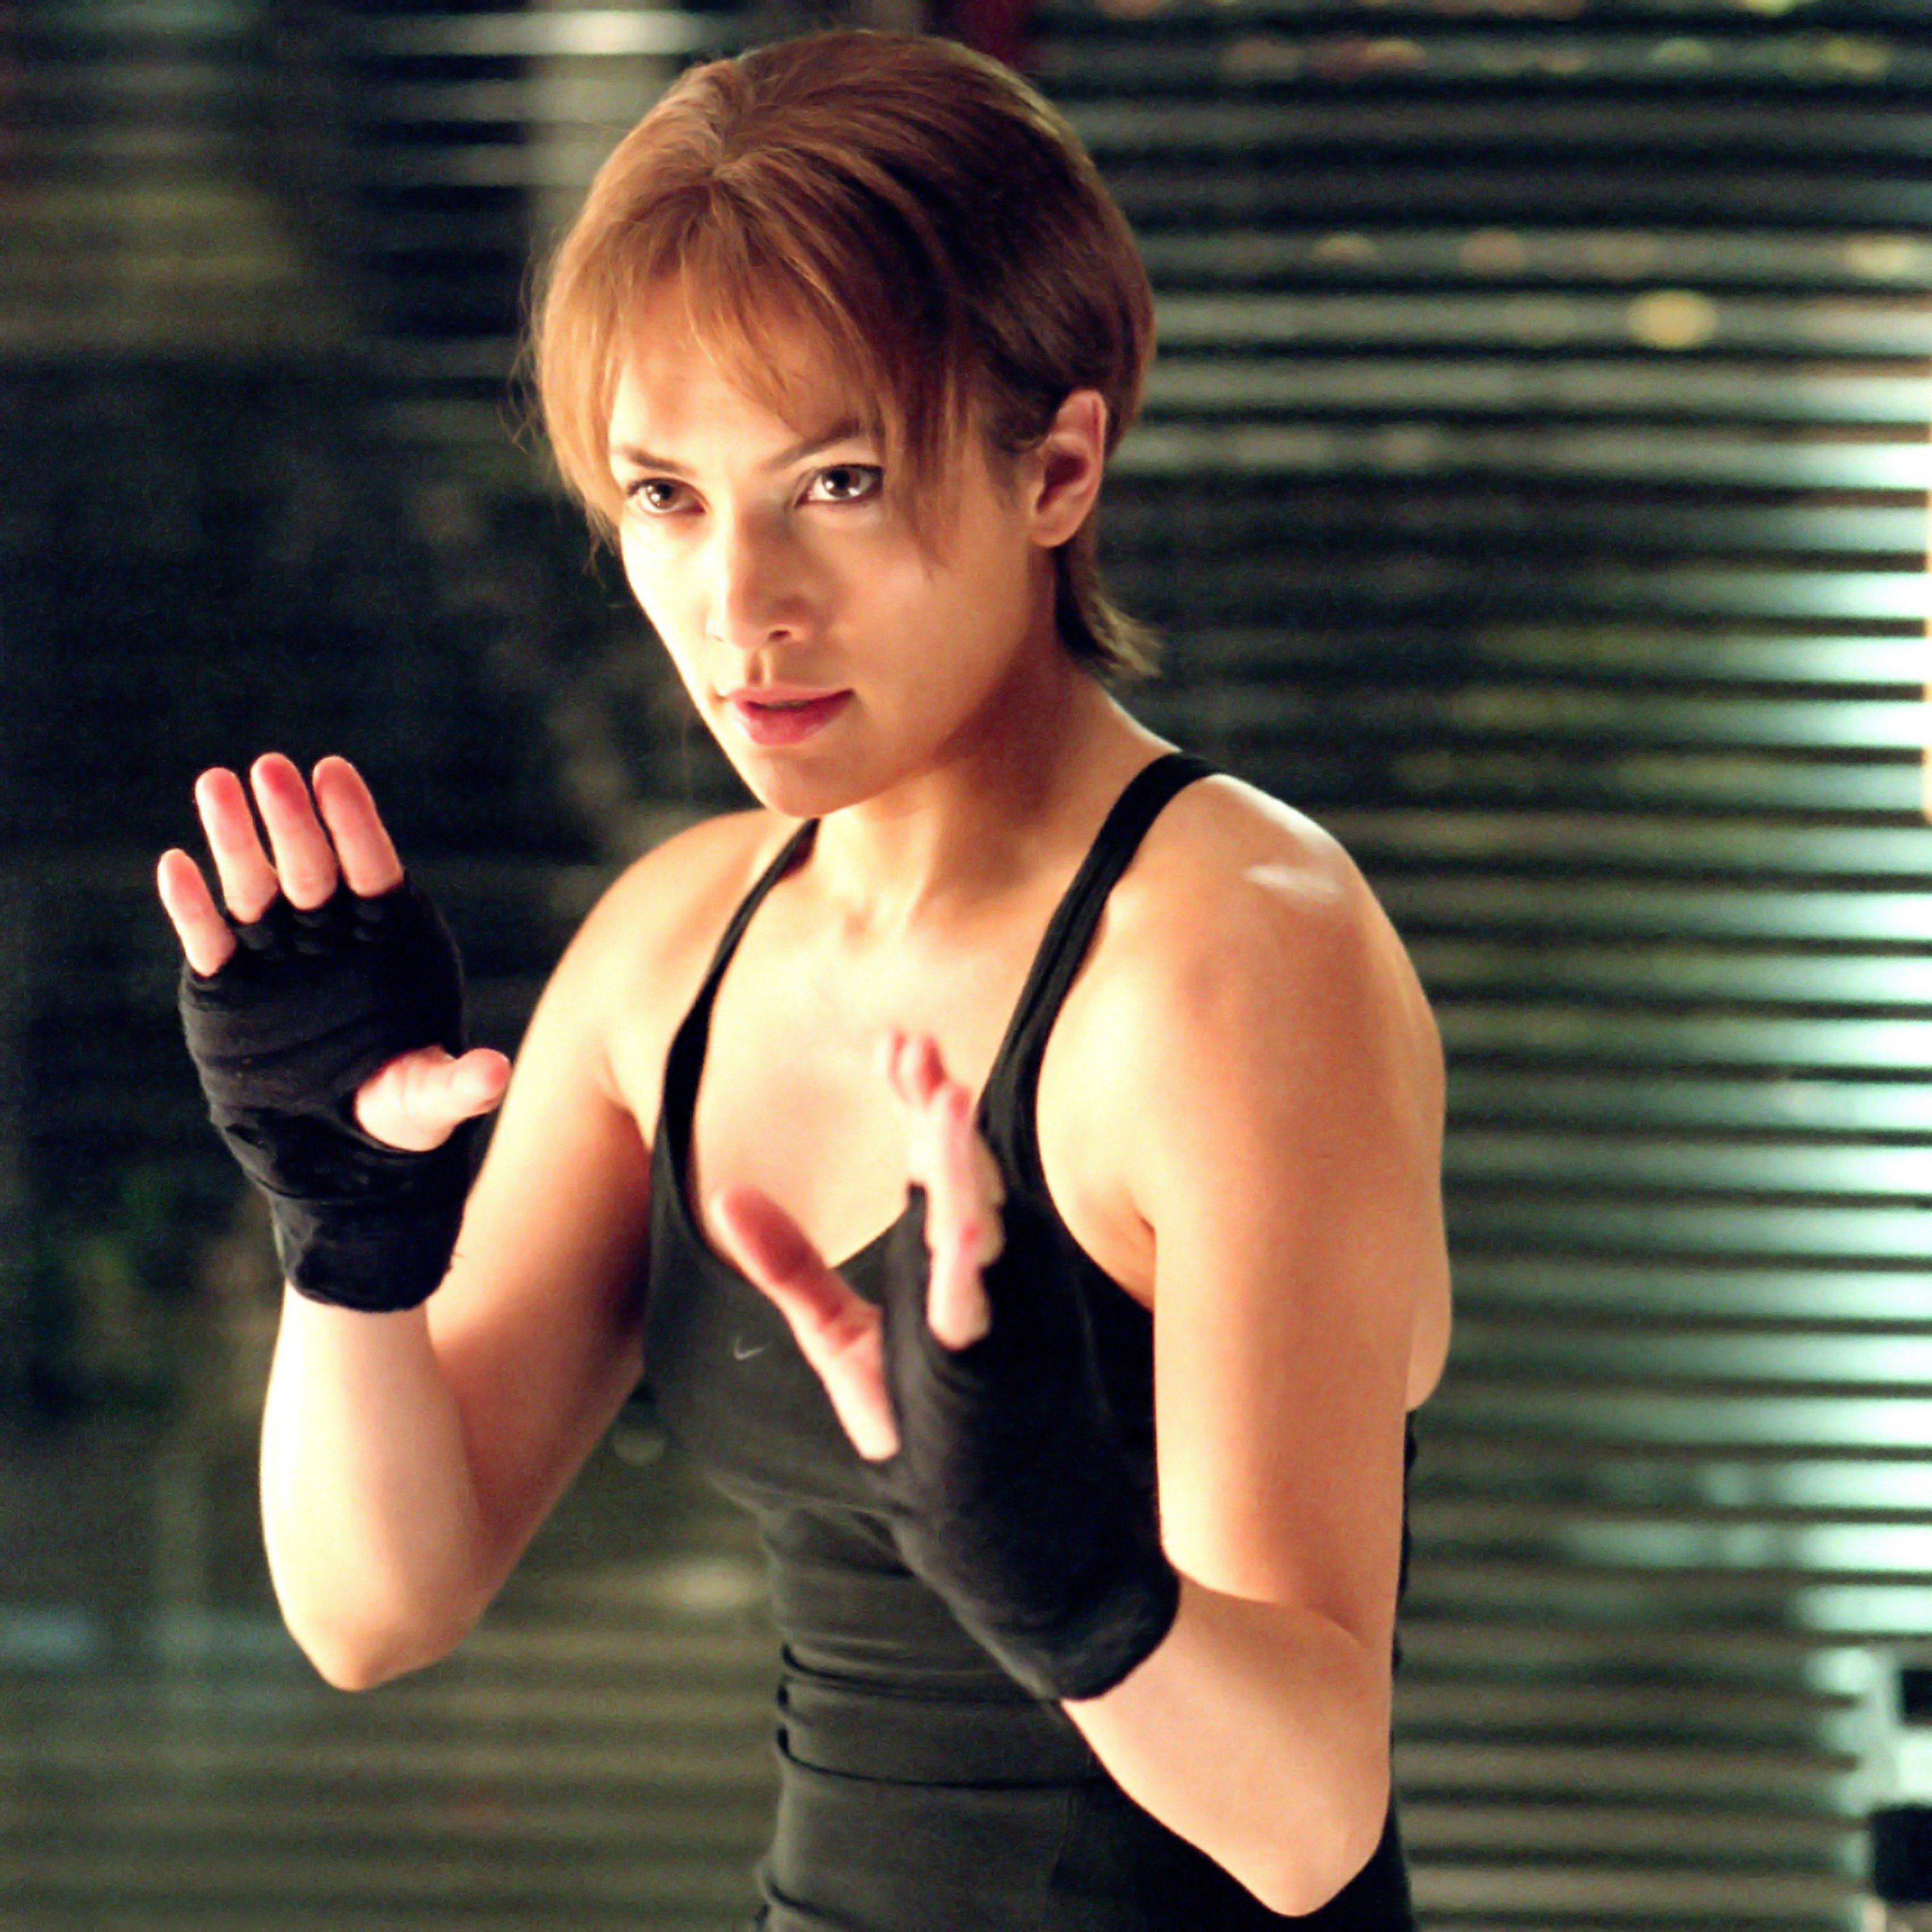 Jennifer Lopez Movies - Every Movie Starring Jennifer Lopez